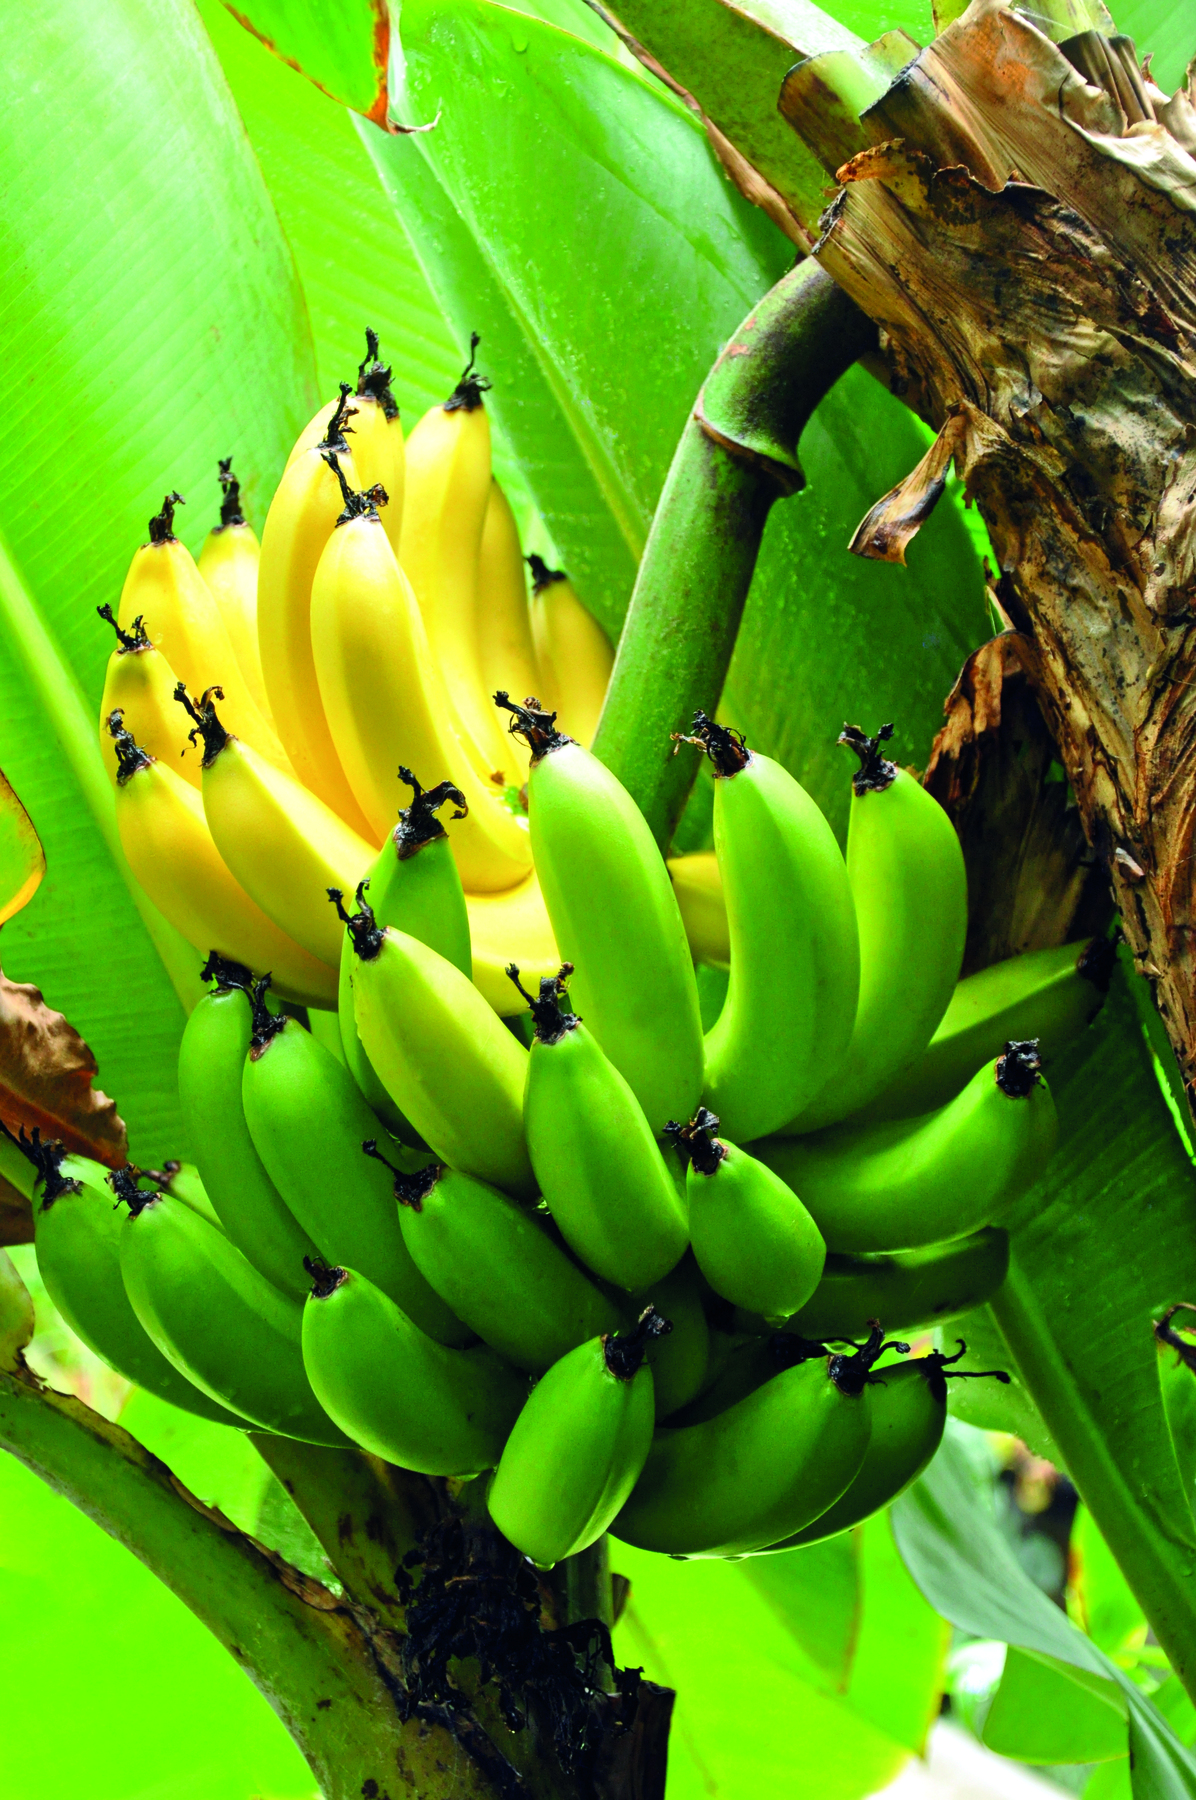 Fotografia. Destaque para uma penca de bananas presa em uma árvore. Algumas estão com a casca amarela e outras estão com a casca verde.